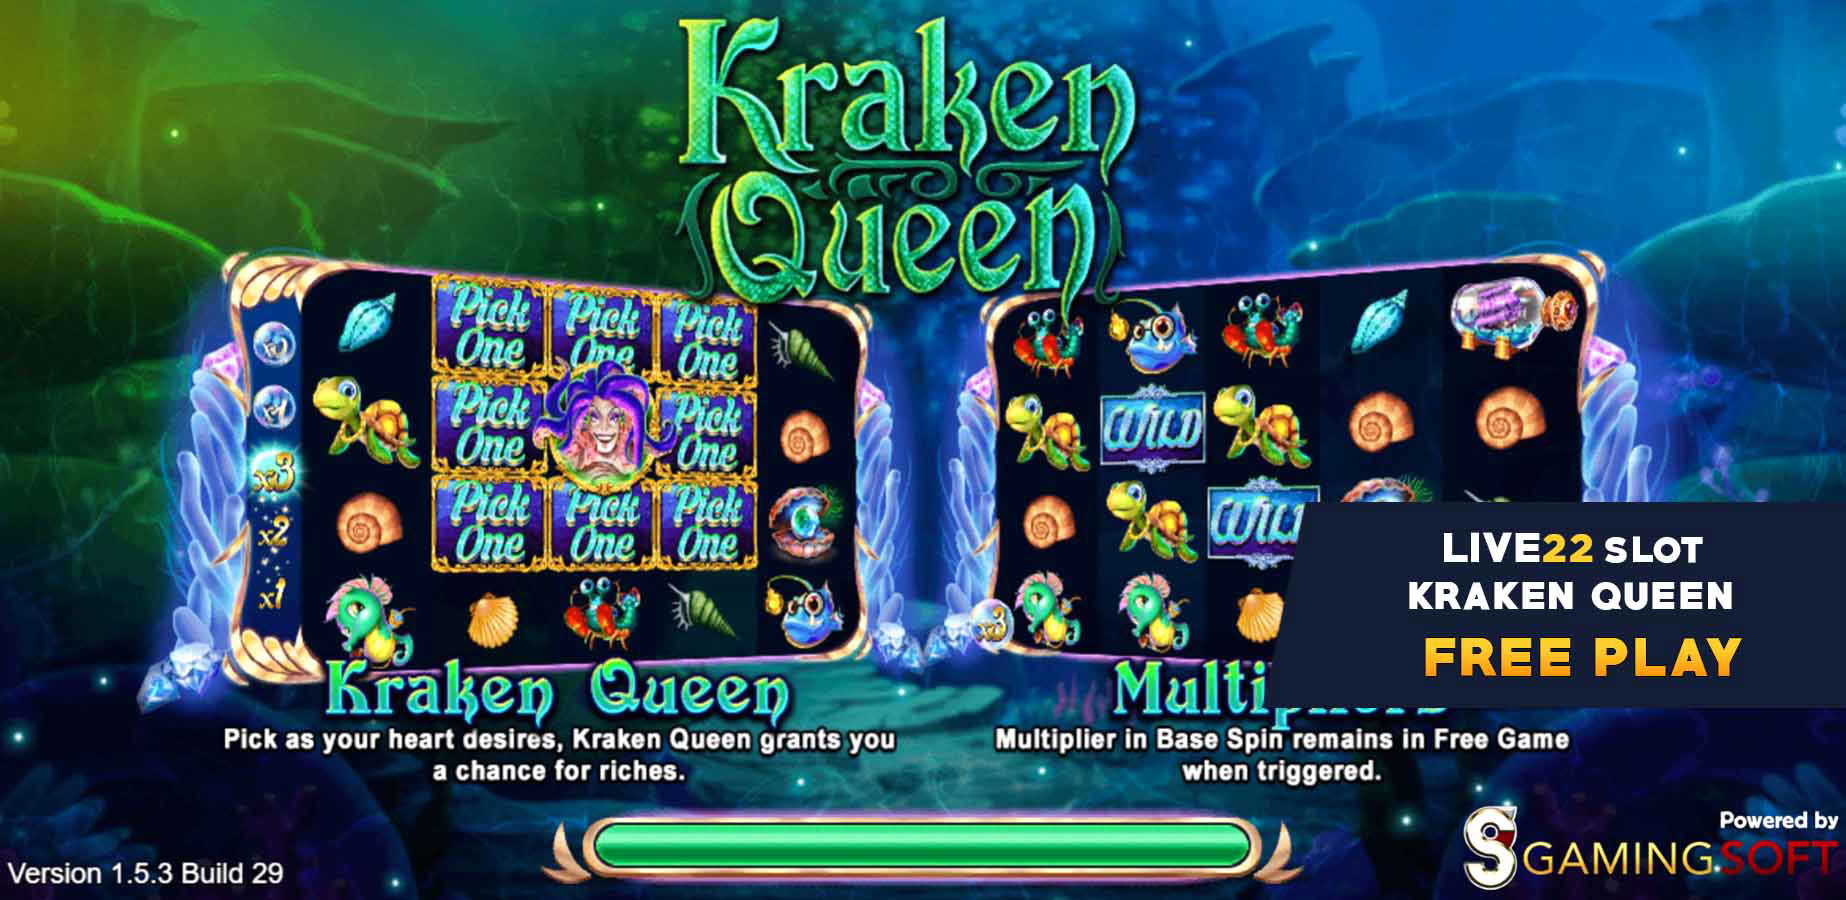 Free Play 1 Kraken Queen Slot Game - Live22 Myanmar